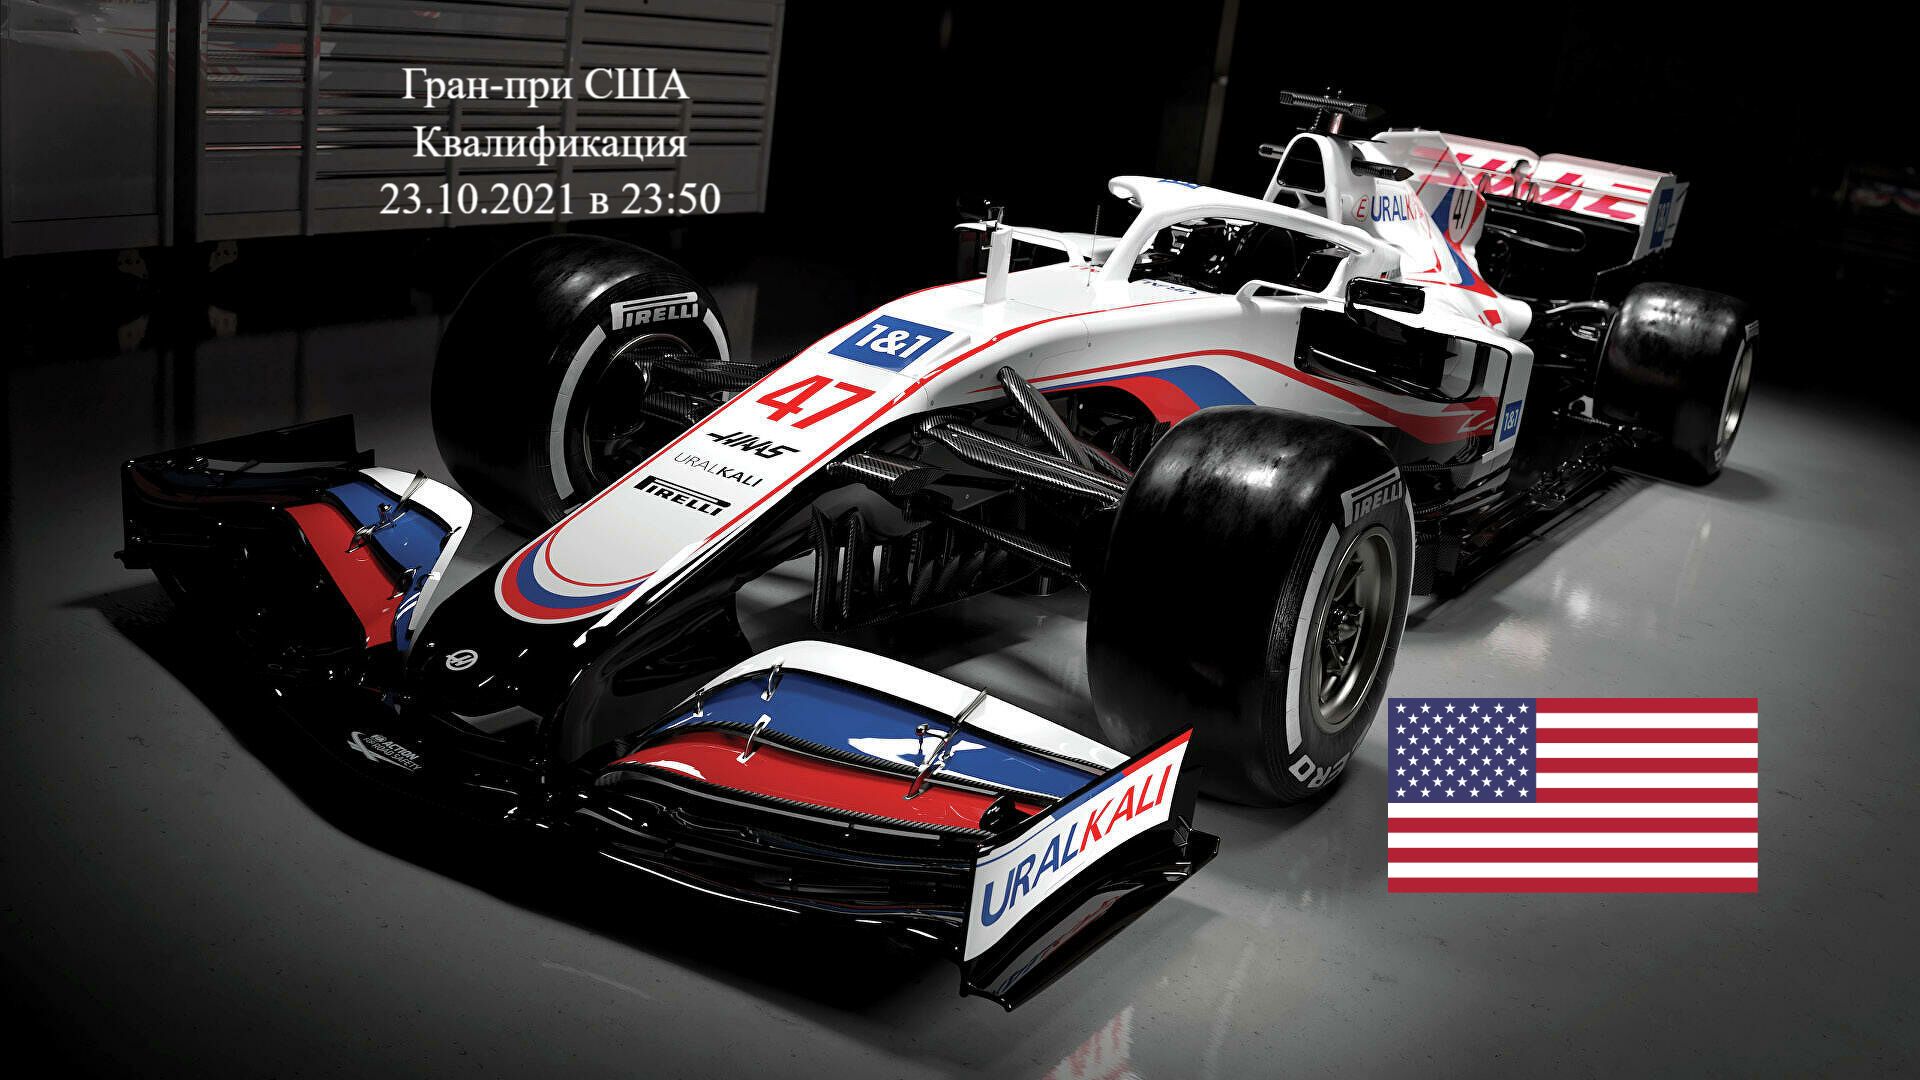 Формула 1 Гран-при США 2021, Квалификация 23.10.2021